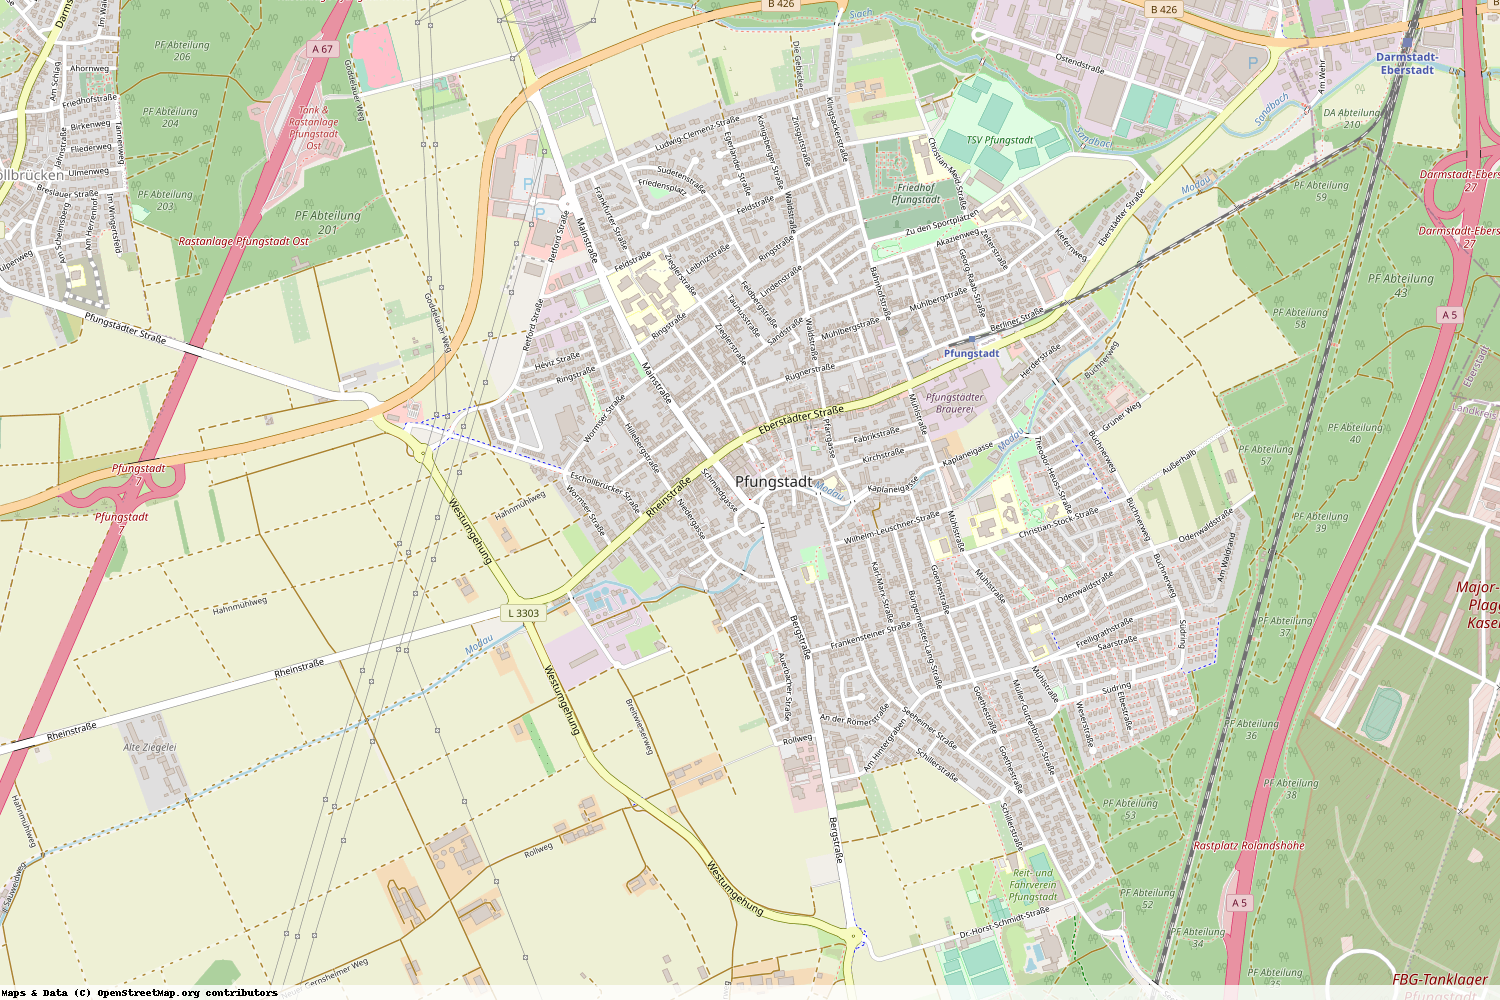 Ist gerade Stromausfall in Hessen - Darmstadt-Dieburg - Pfungstadt?